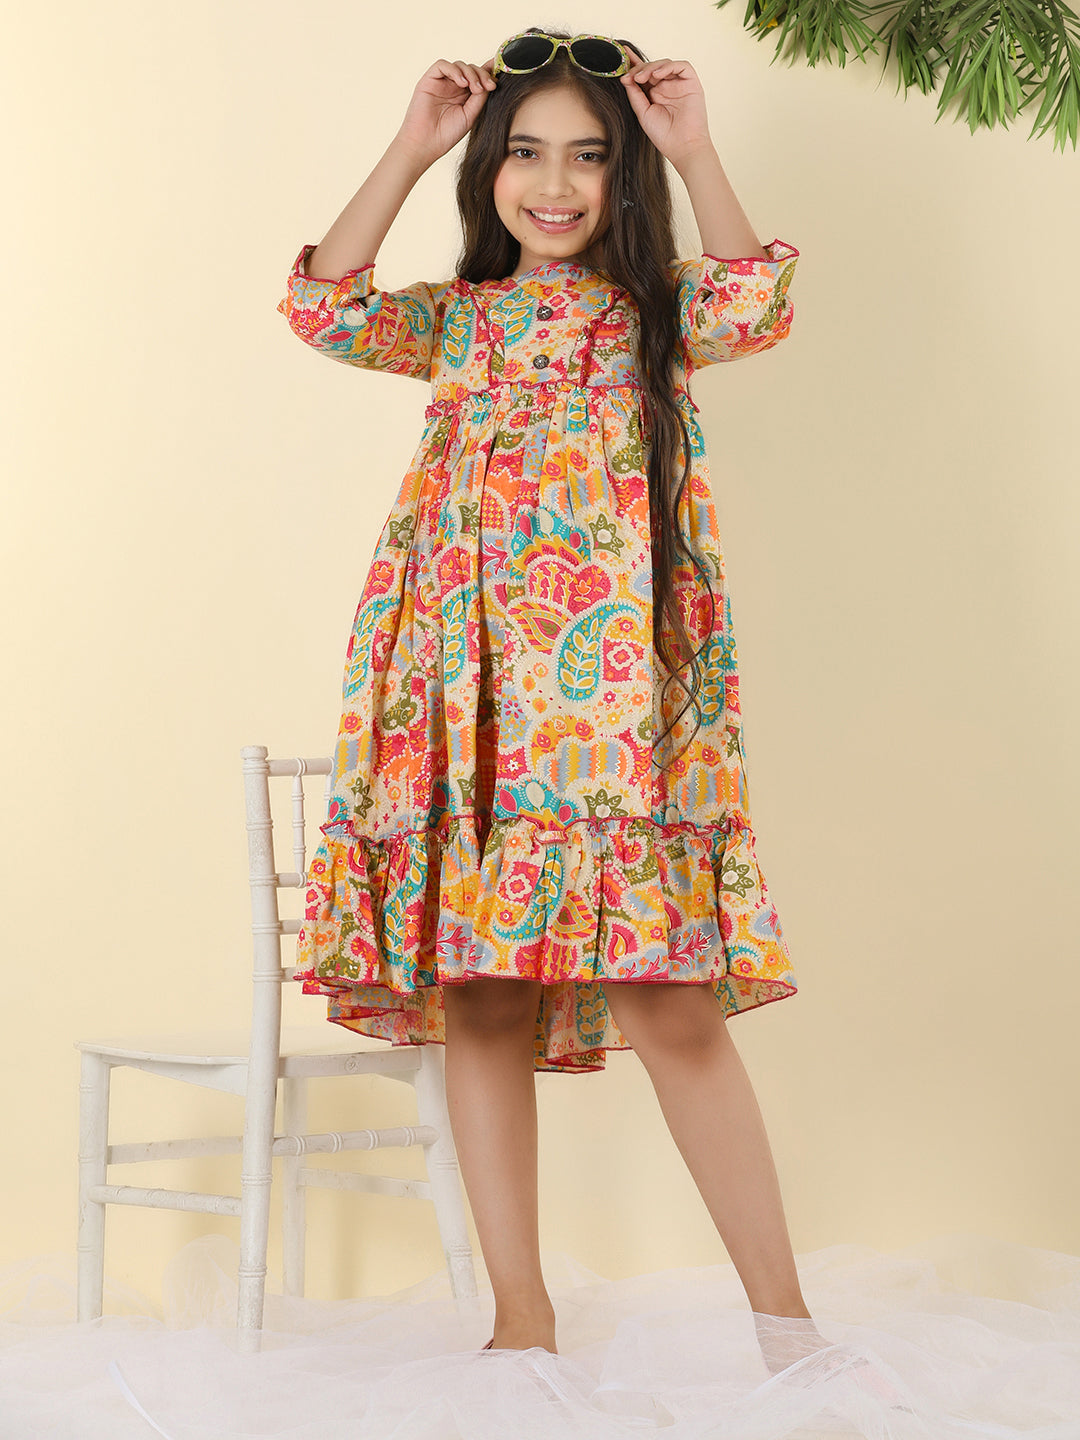 Cutiekins Girls V-Neck Printed Dress -Multicolor